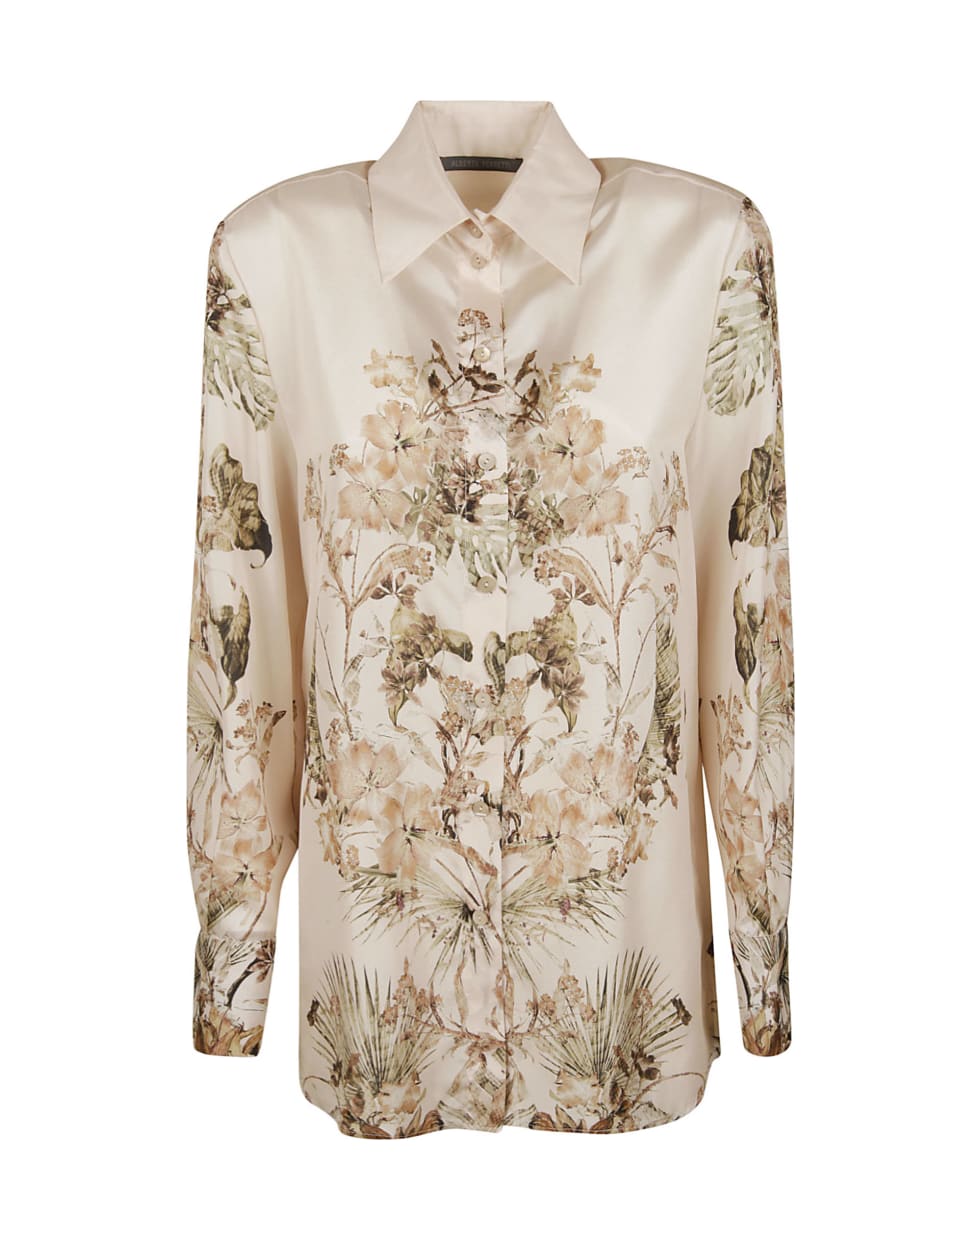 Alberta Ferretti Floral Print Silk Shirt - Beige